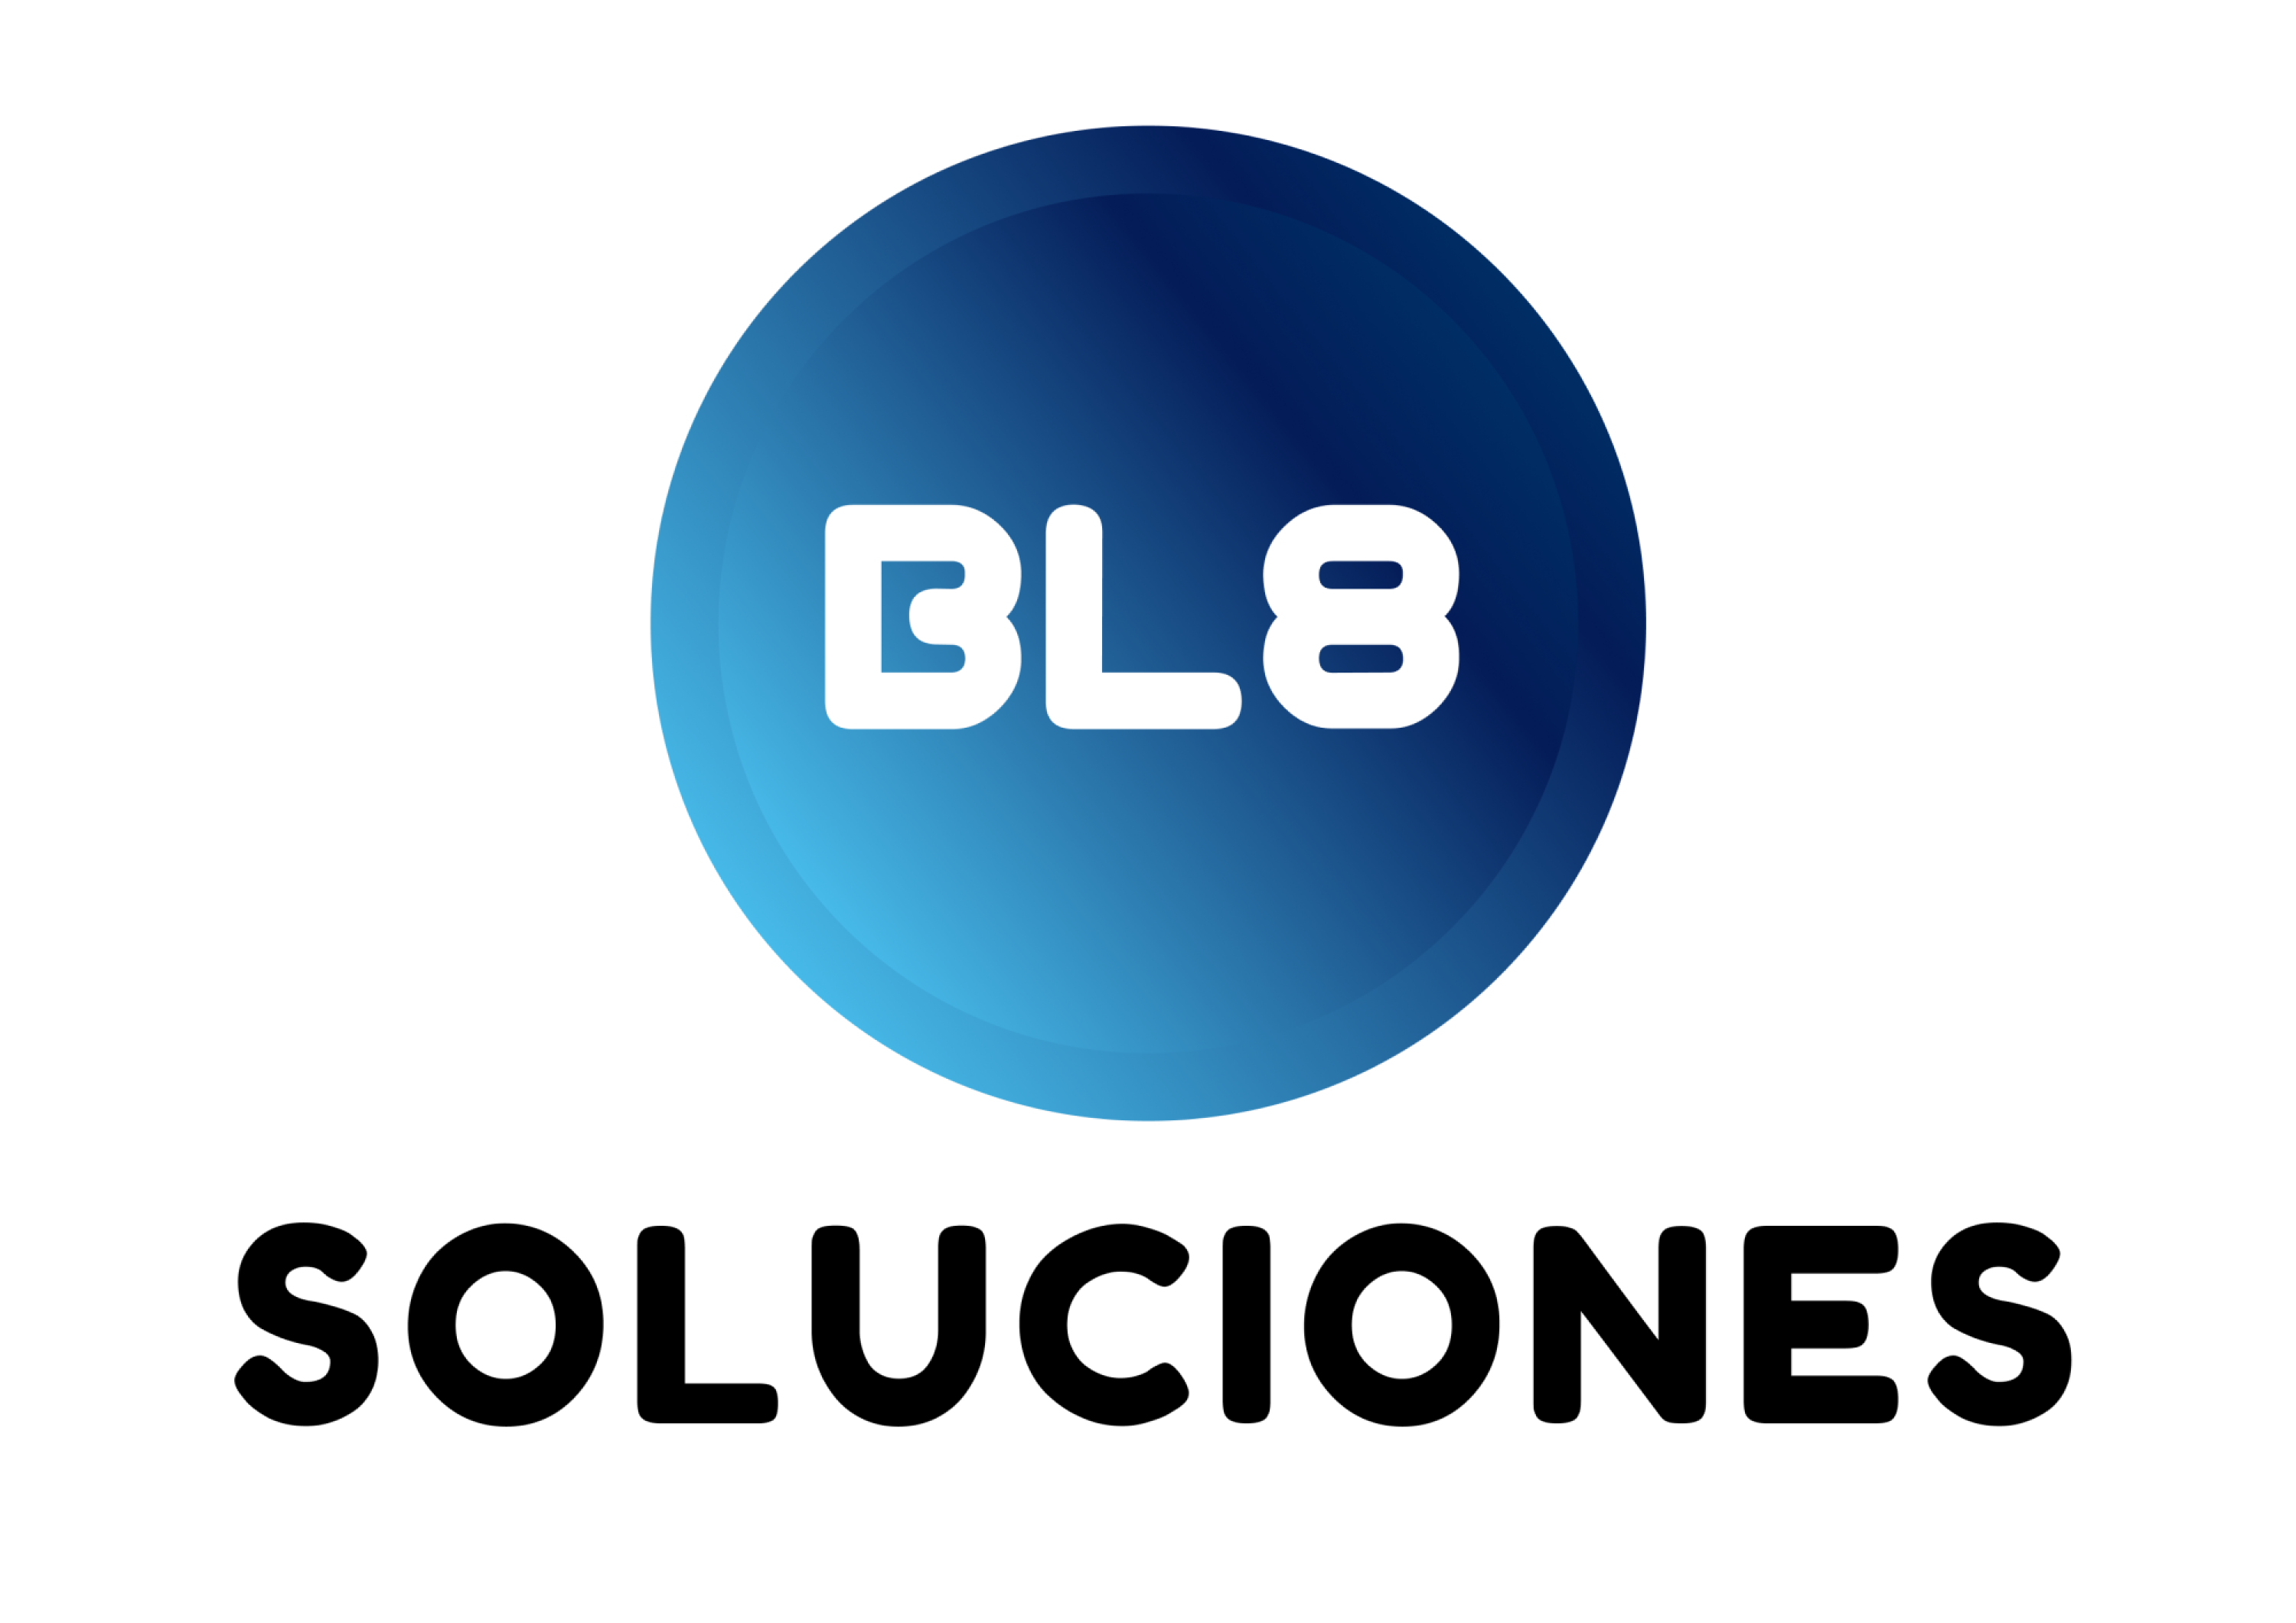 BL8 SOLUCIONES